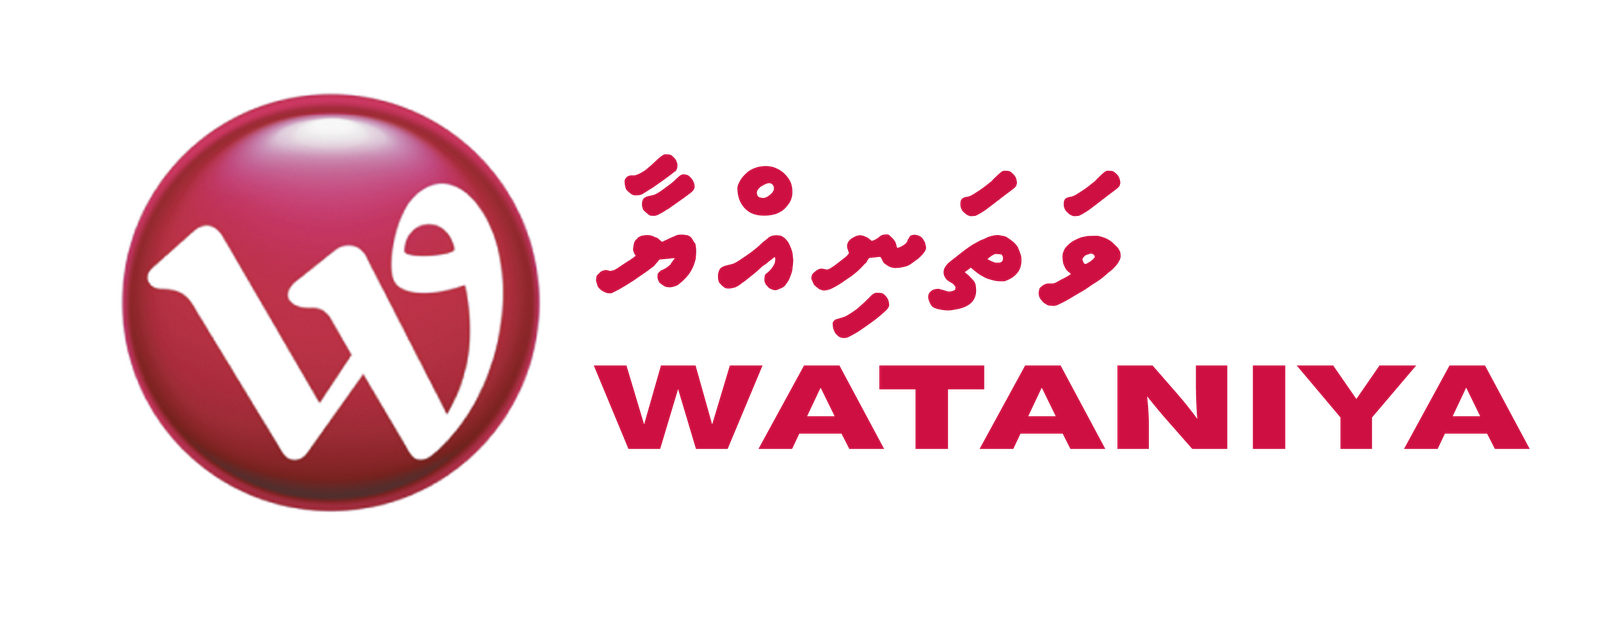 Job in wataniya telecom in kuwait